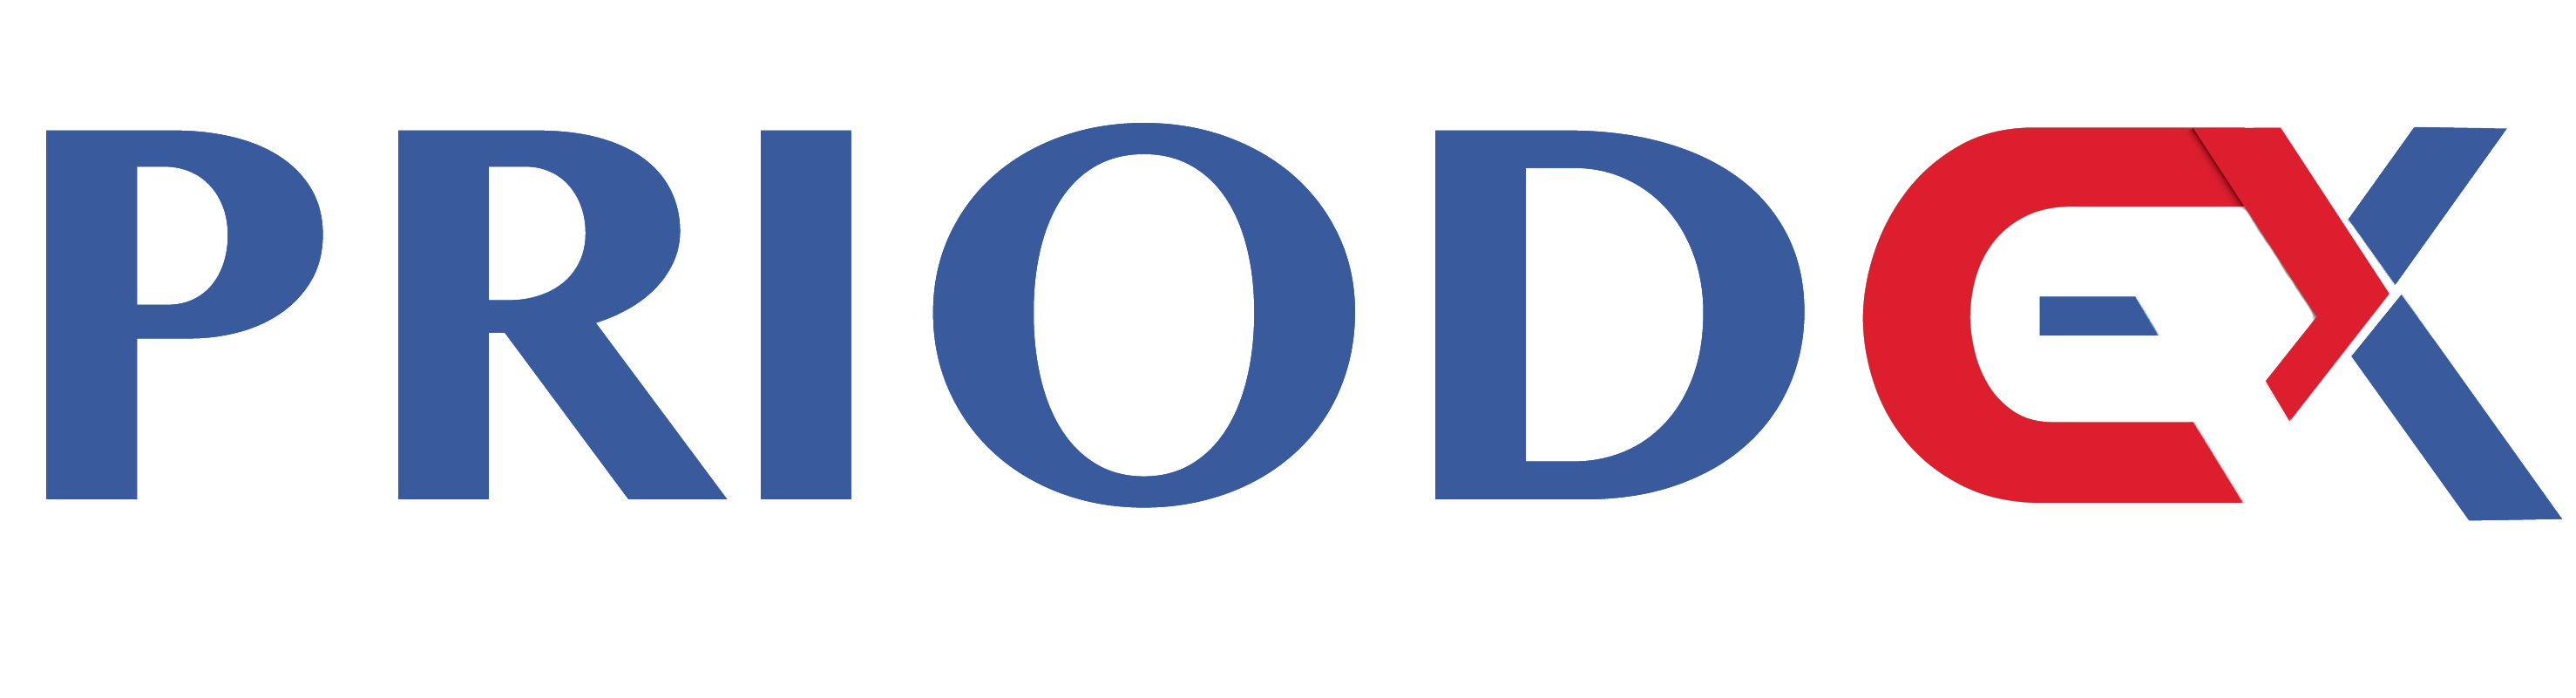 Logo Priodex 395A9D